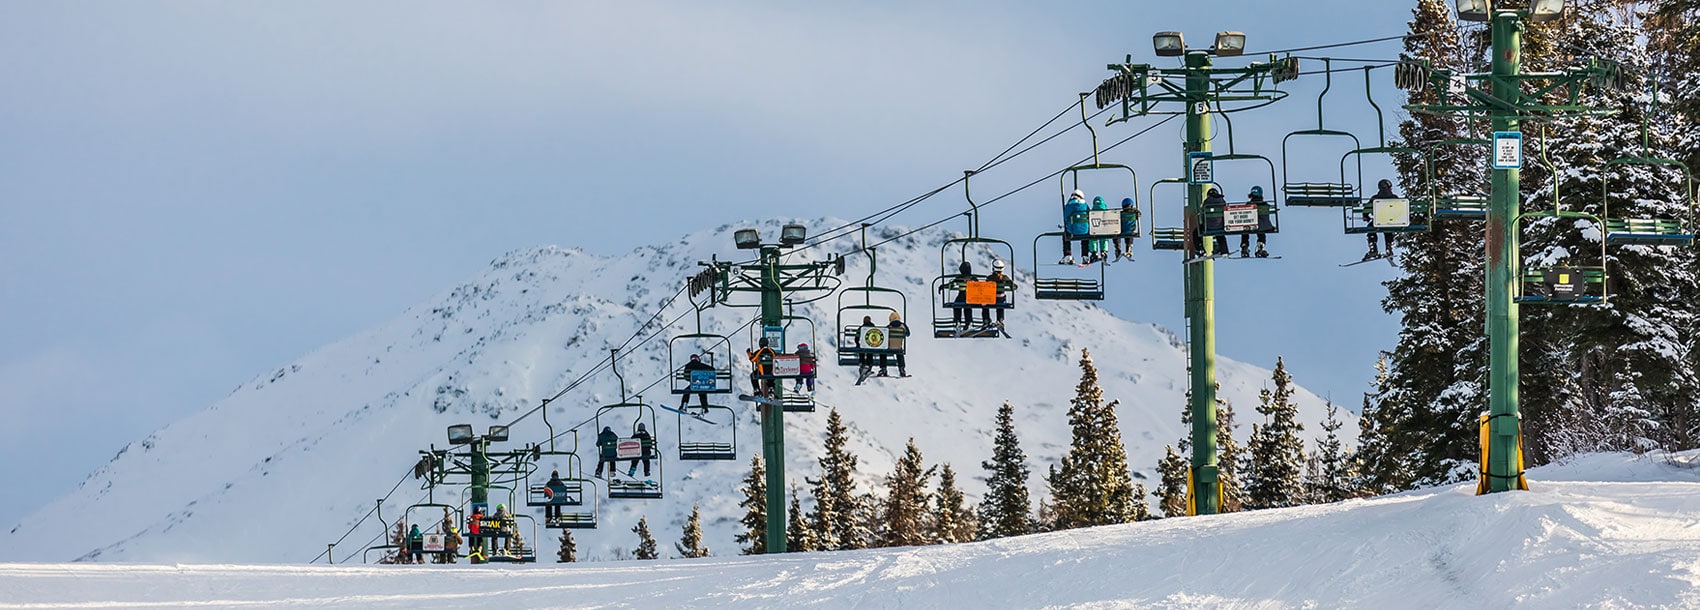 Mountain and ski lift